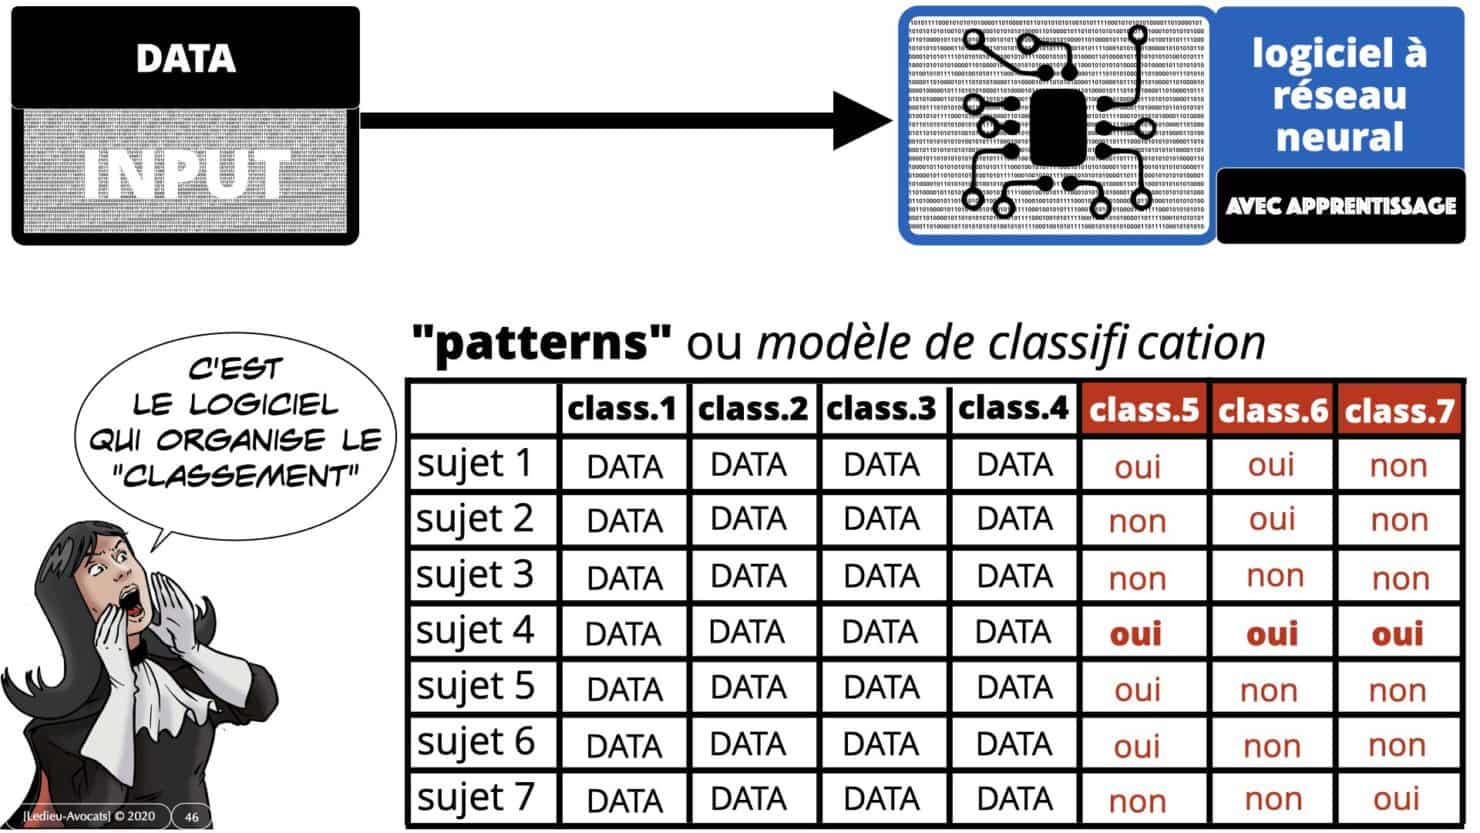 deep learning et patterns (modèles de classification)